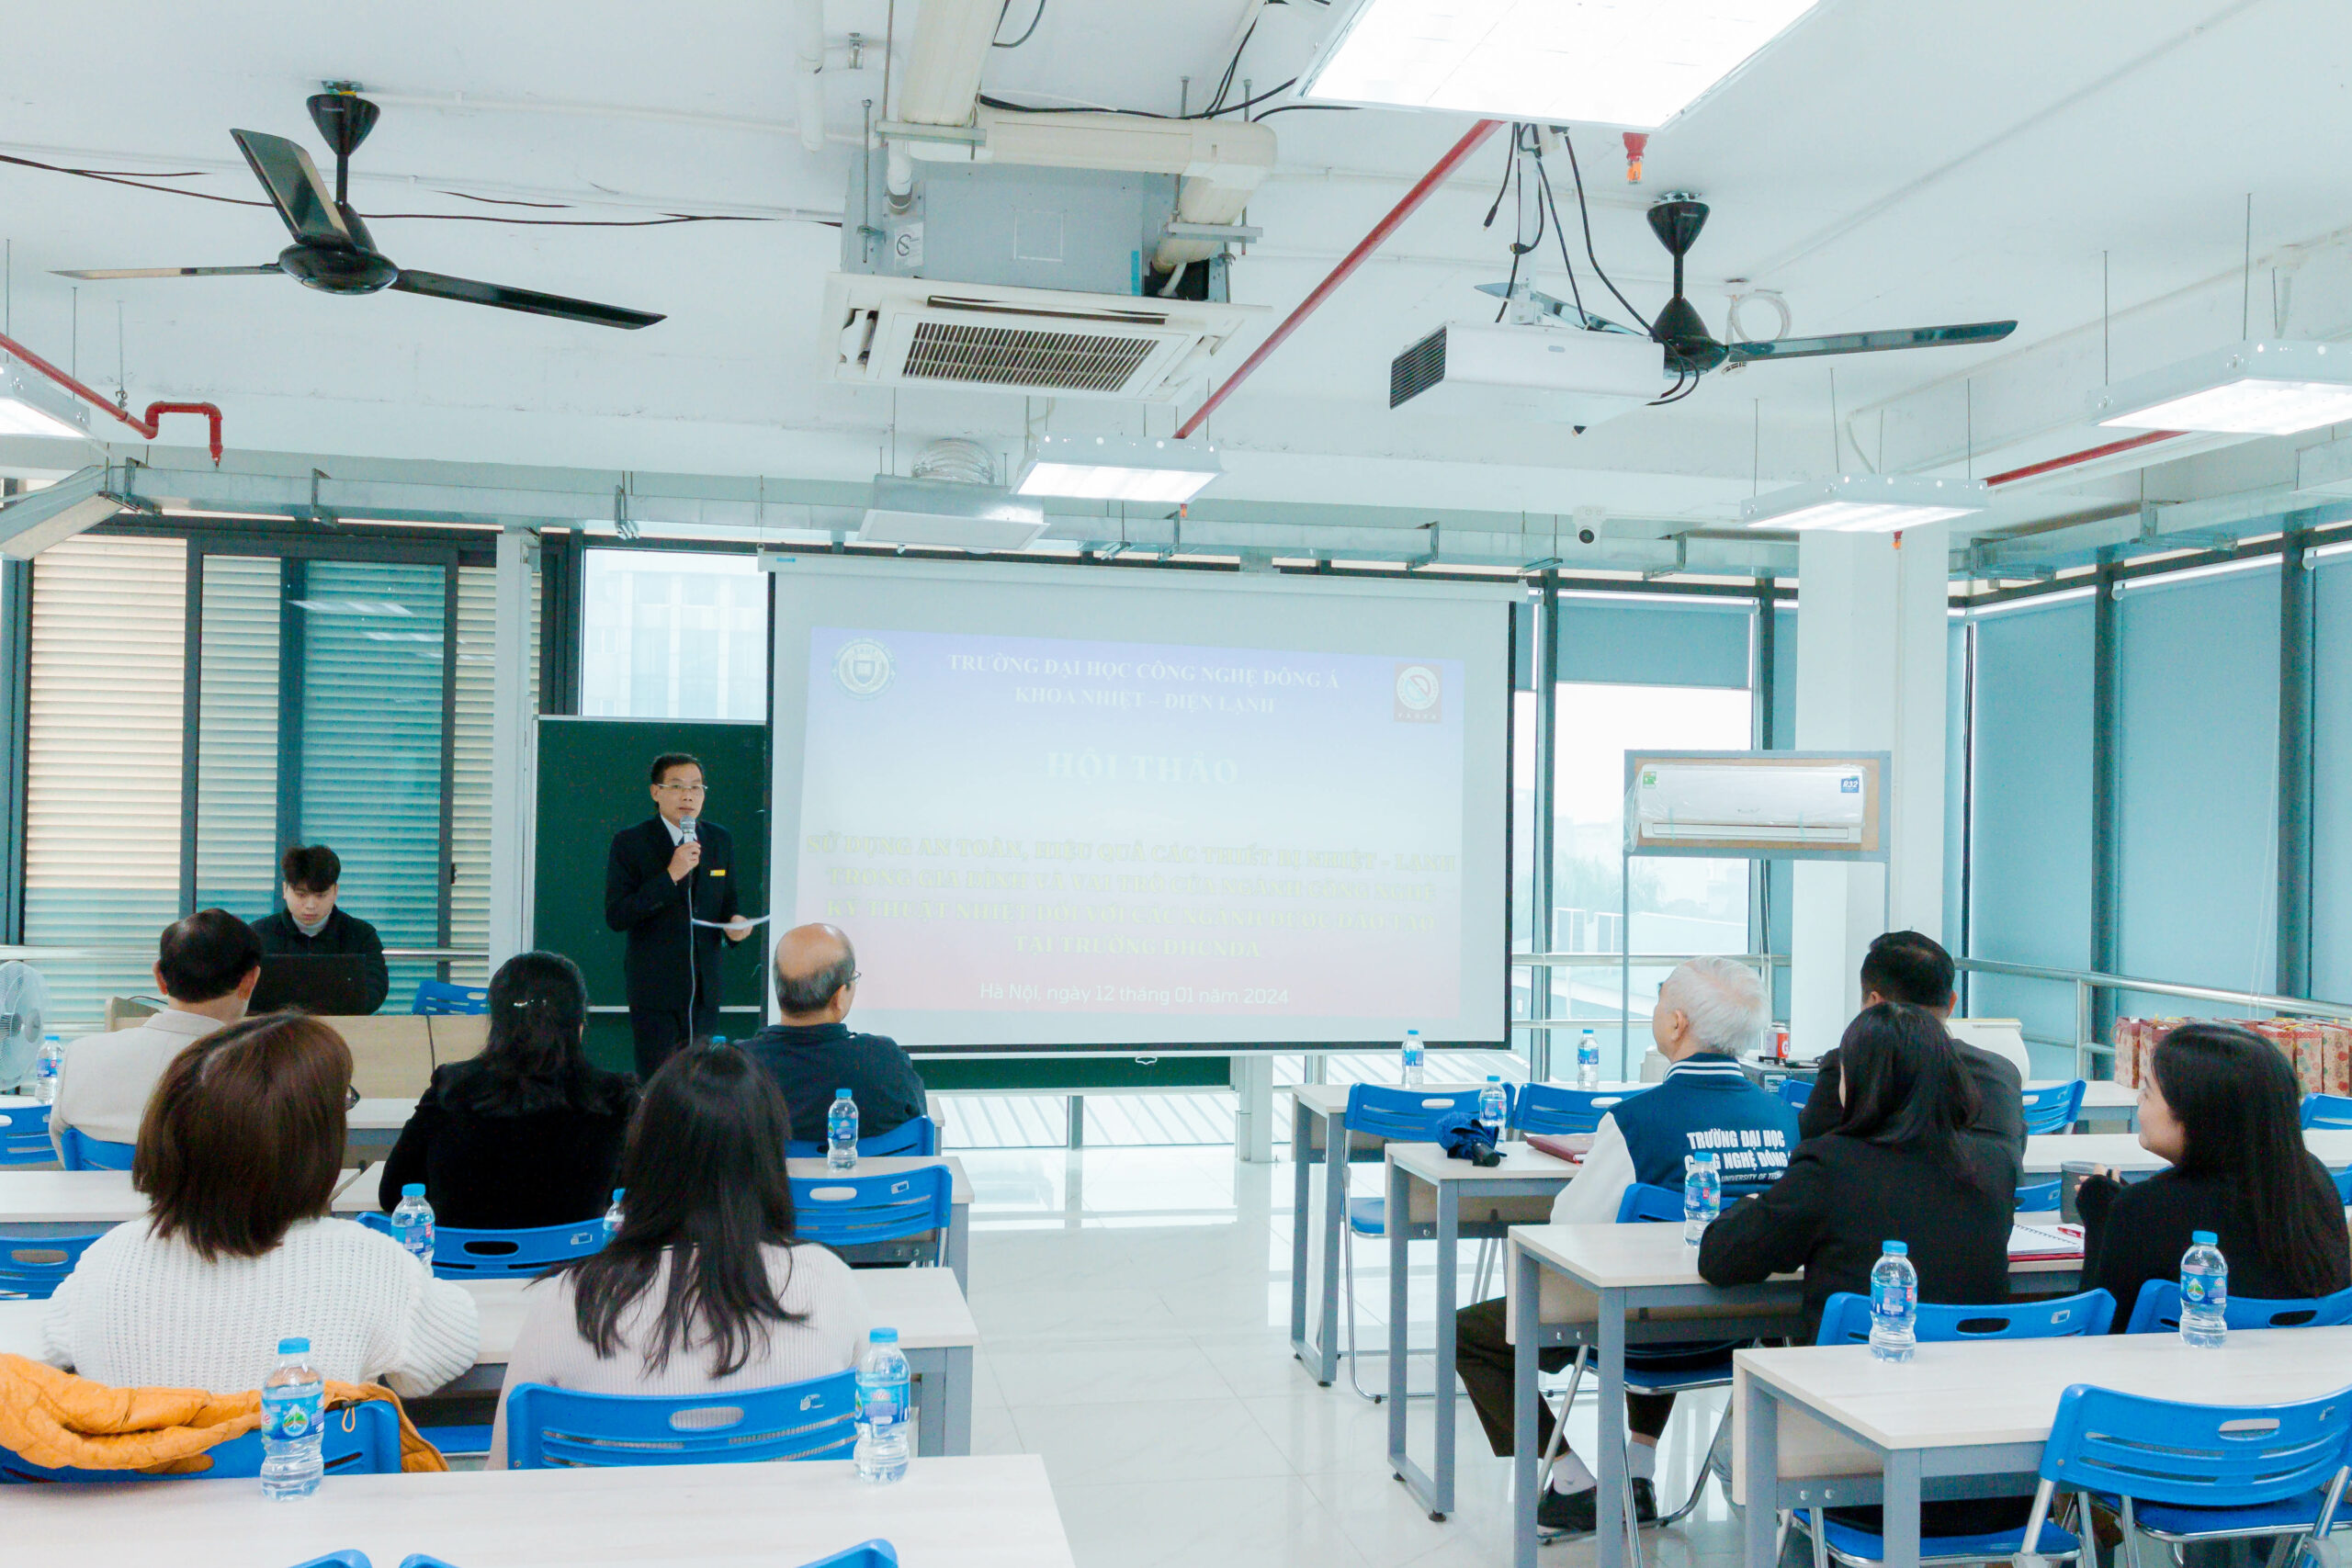 Hội thảo: “Sử dụng an toàn, hiệu quả các thiết bị nhiệt - lạnh trong gia đình và vai trò của công nghệ kỹ thuật nhiệt đối với các ngành được đào tạo tại trường Đại học Công nghệ Đông Á”